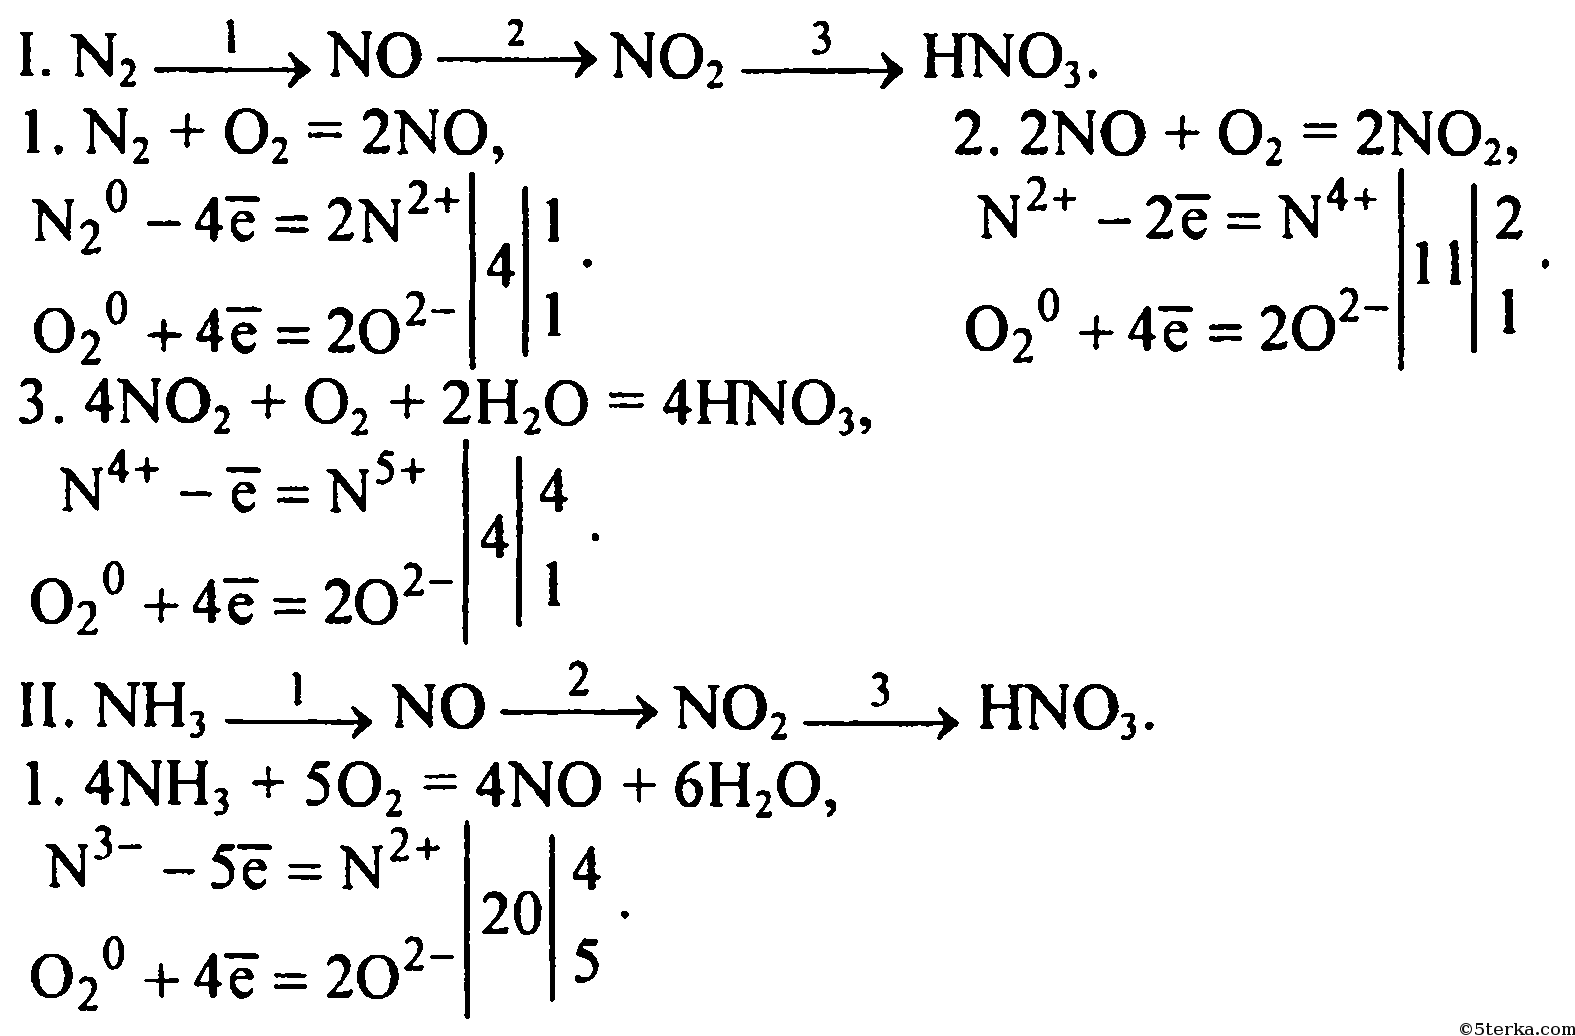 Ca hno3 ca no3 2 n2 h2o. Цепочки реакций с азотной кислотой. Цепочка химических превращений азот. Цепочка превращений азот аммиак. Уравнение химических реакций к цепочкам превращений.